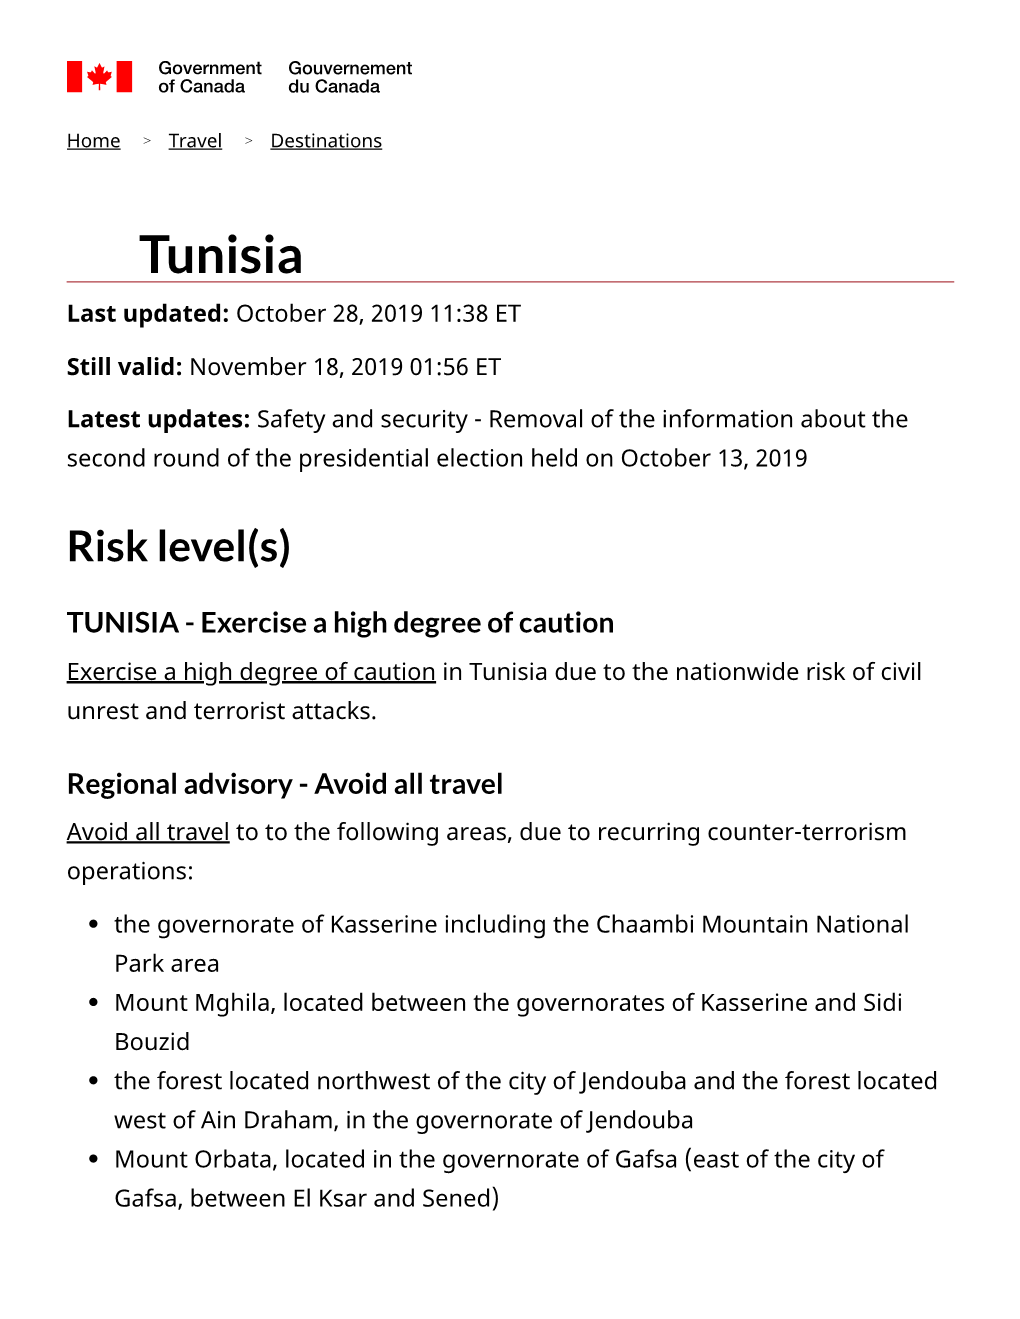 Tunisia Last Updated: October 28, 2019 11:38 ET